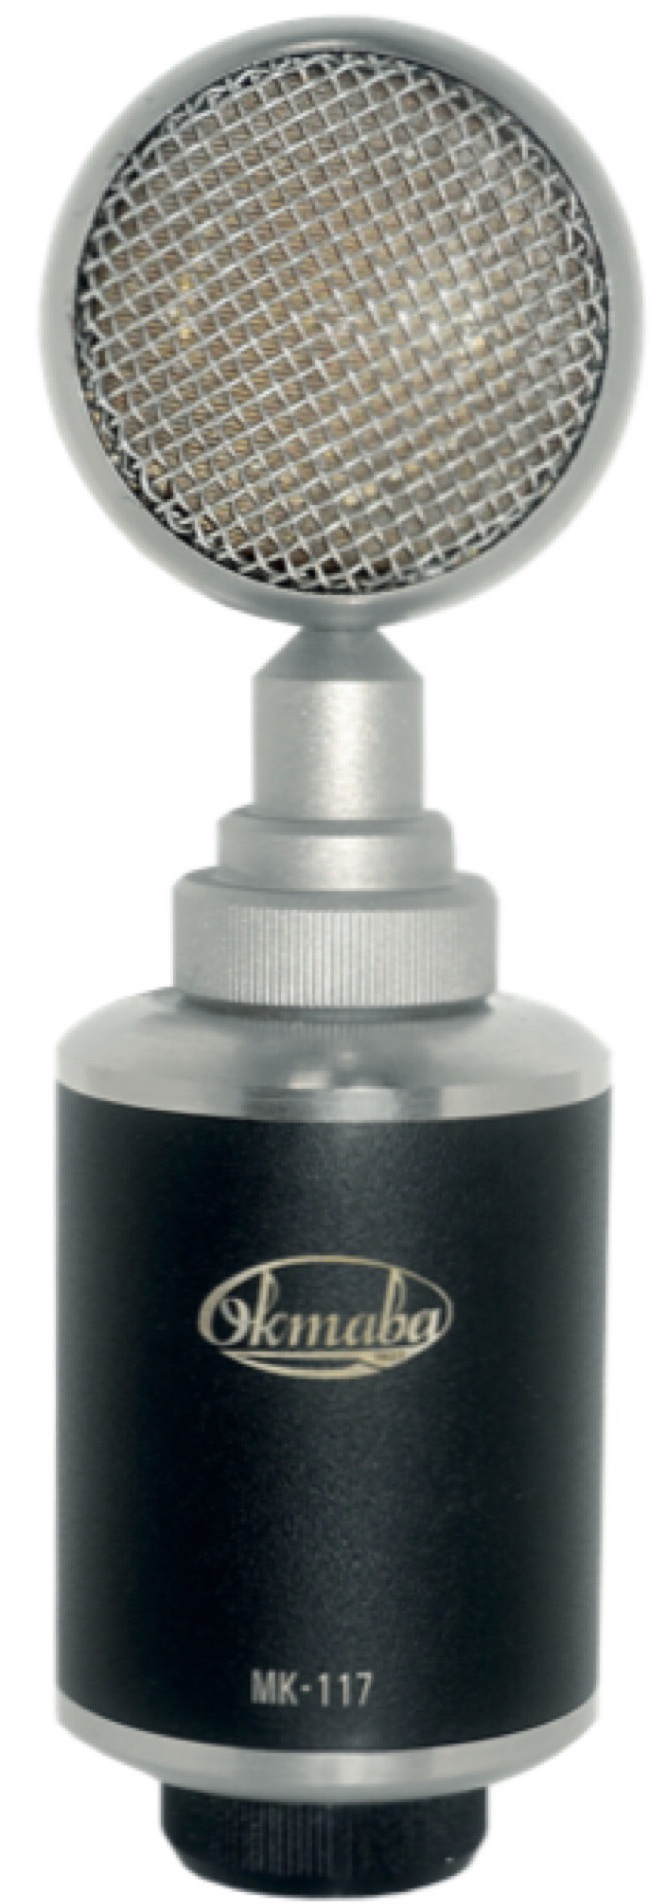 Студийные микрофоны Октава МК-117 (черный) микрофон студийный конденсаторный октава мк 012 ч с